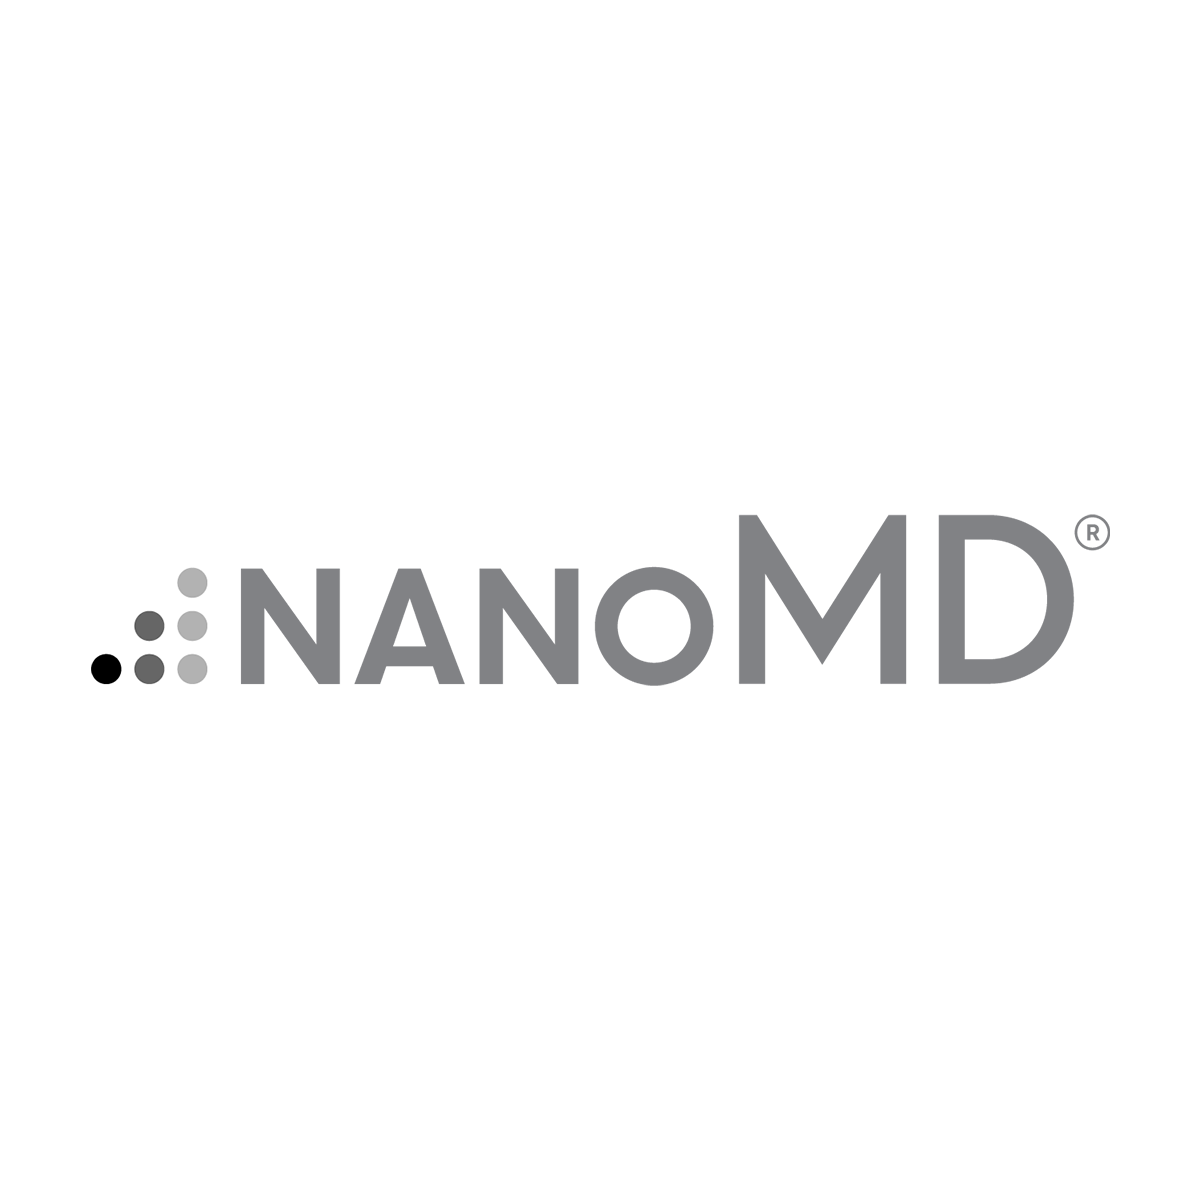 NanoMD